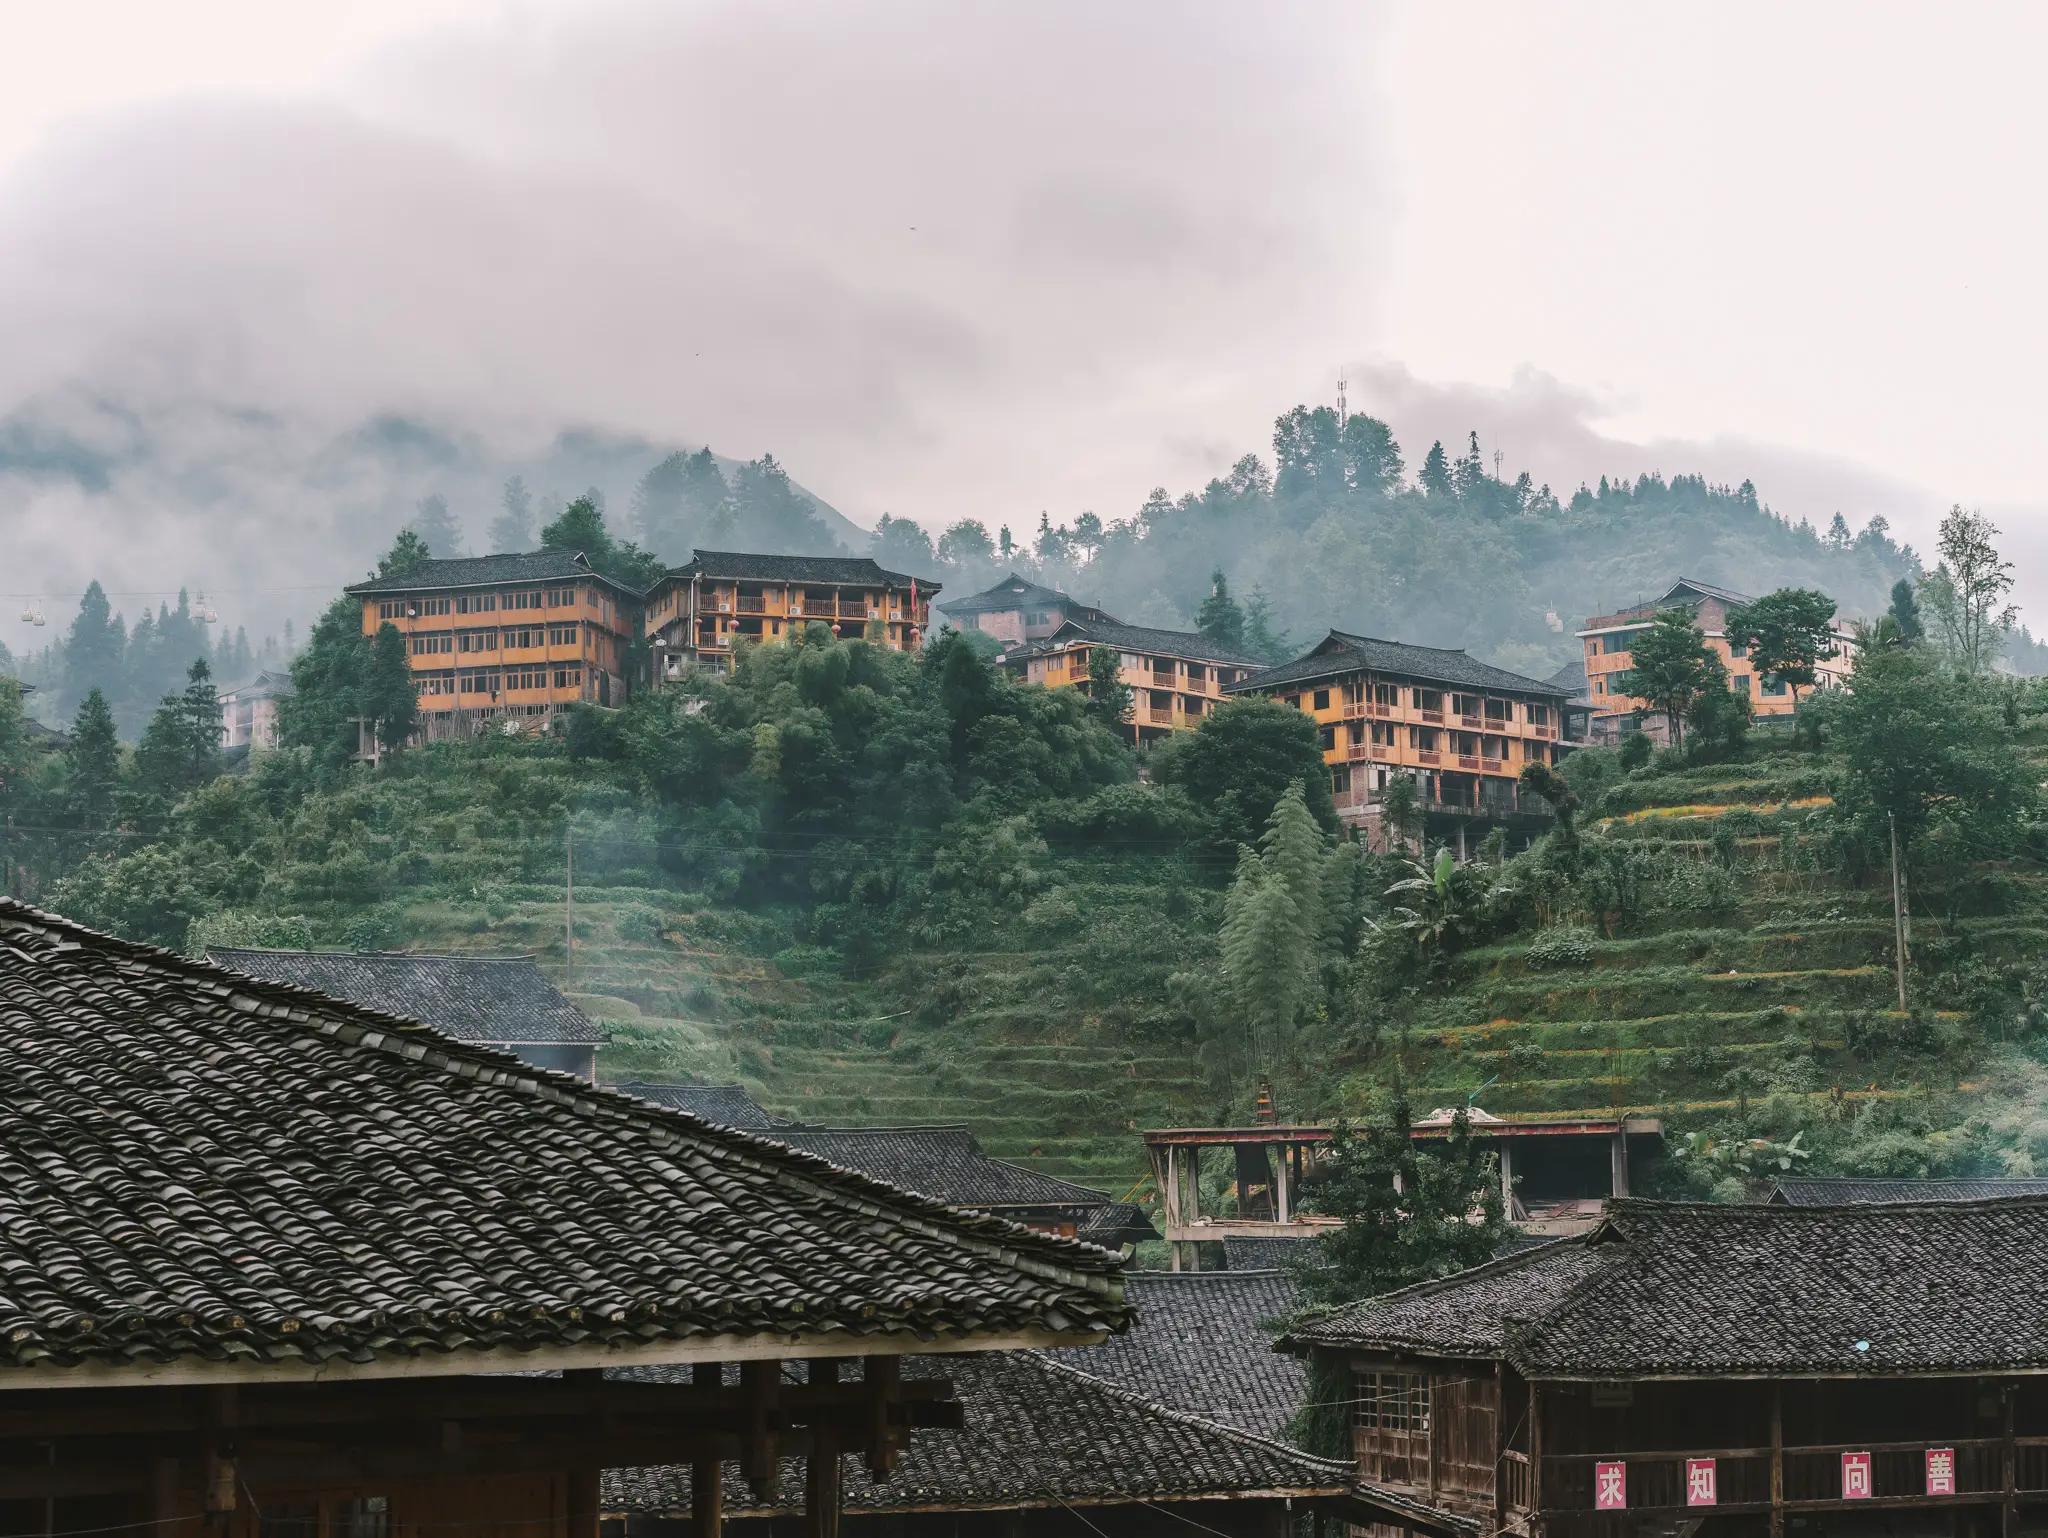 The Longji Rice Terraces